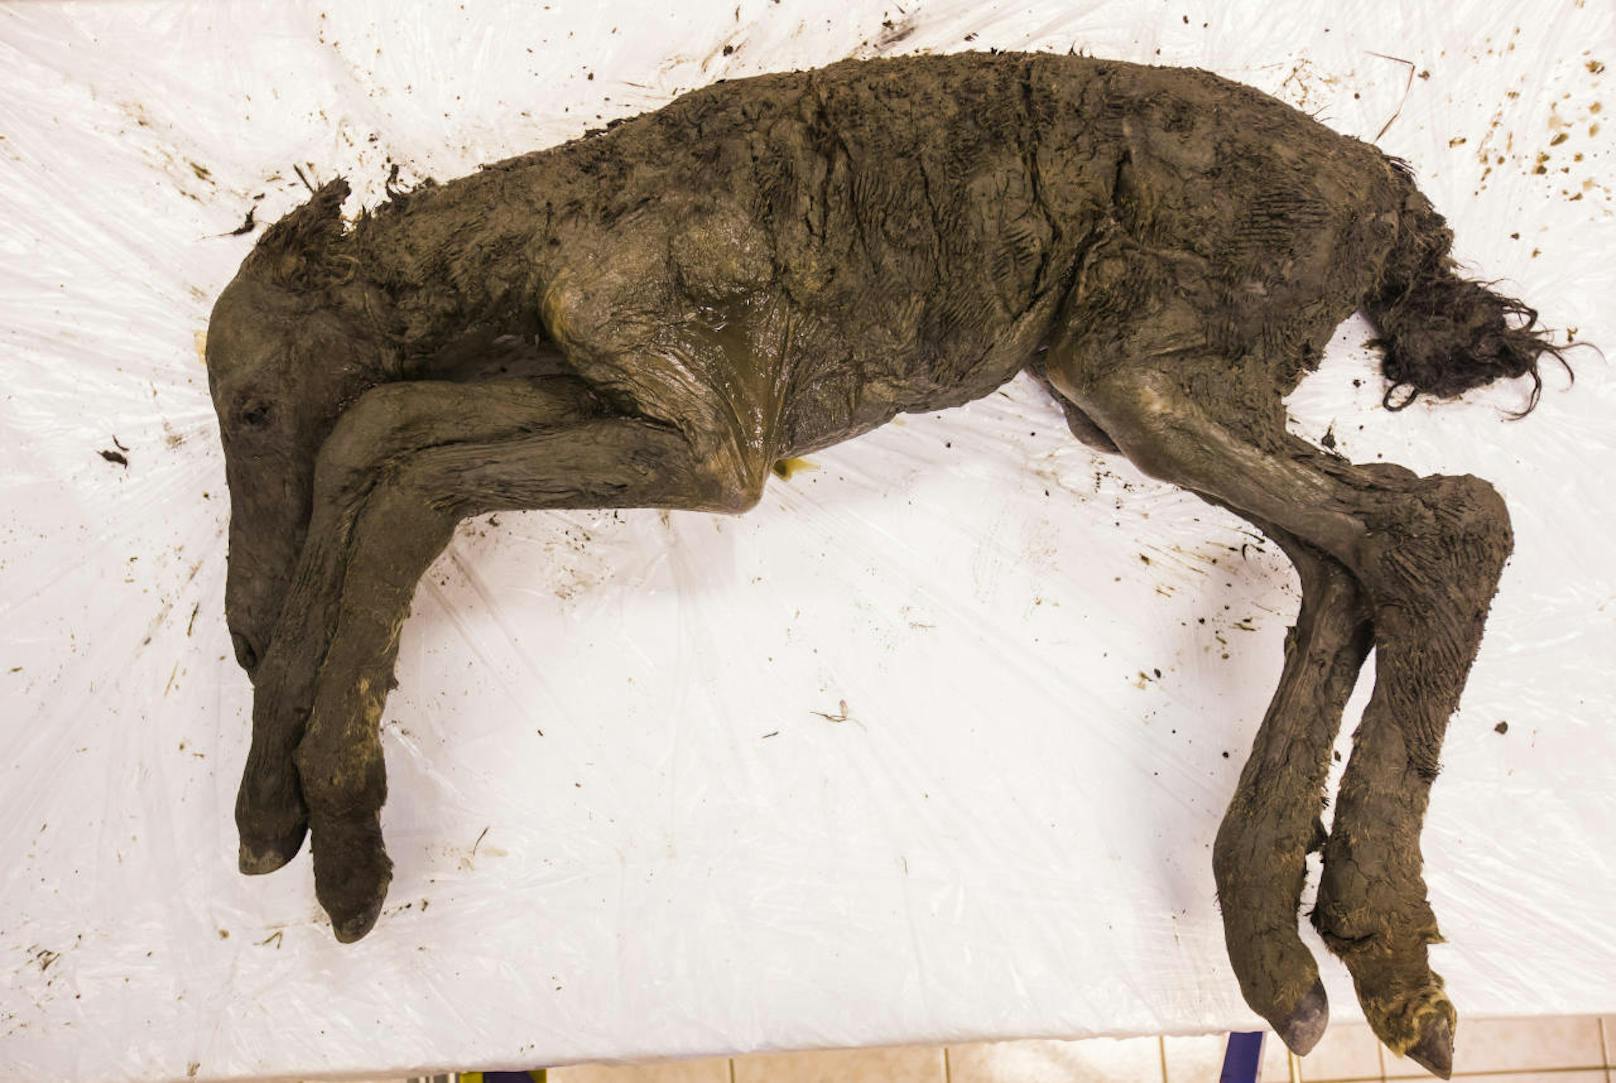 "Der Körper des Tieres wurde ohne Schäden gefunden, sogar das Fell ist noch dran", sagte Semjon Grigorjew von der Universität Jakutsk im Fernen Osten Russlands.